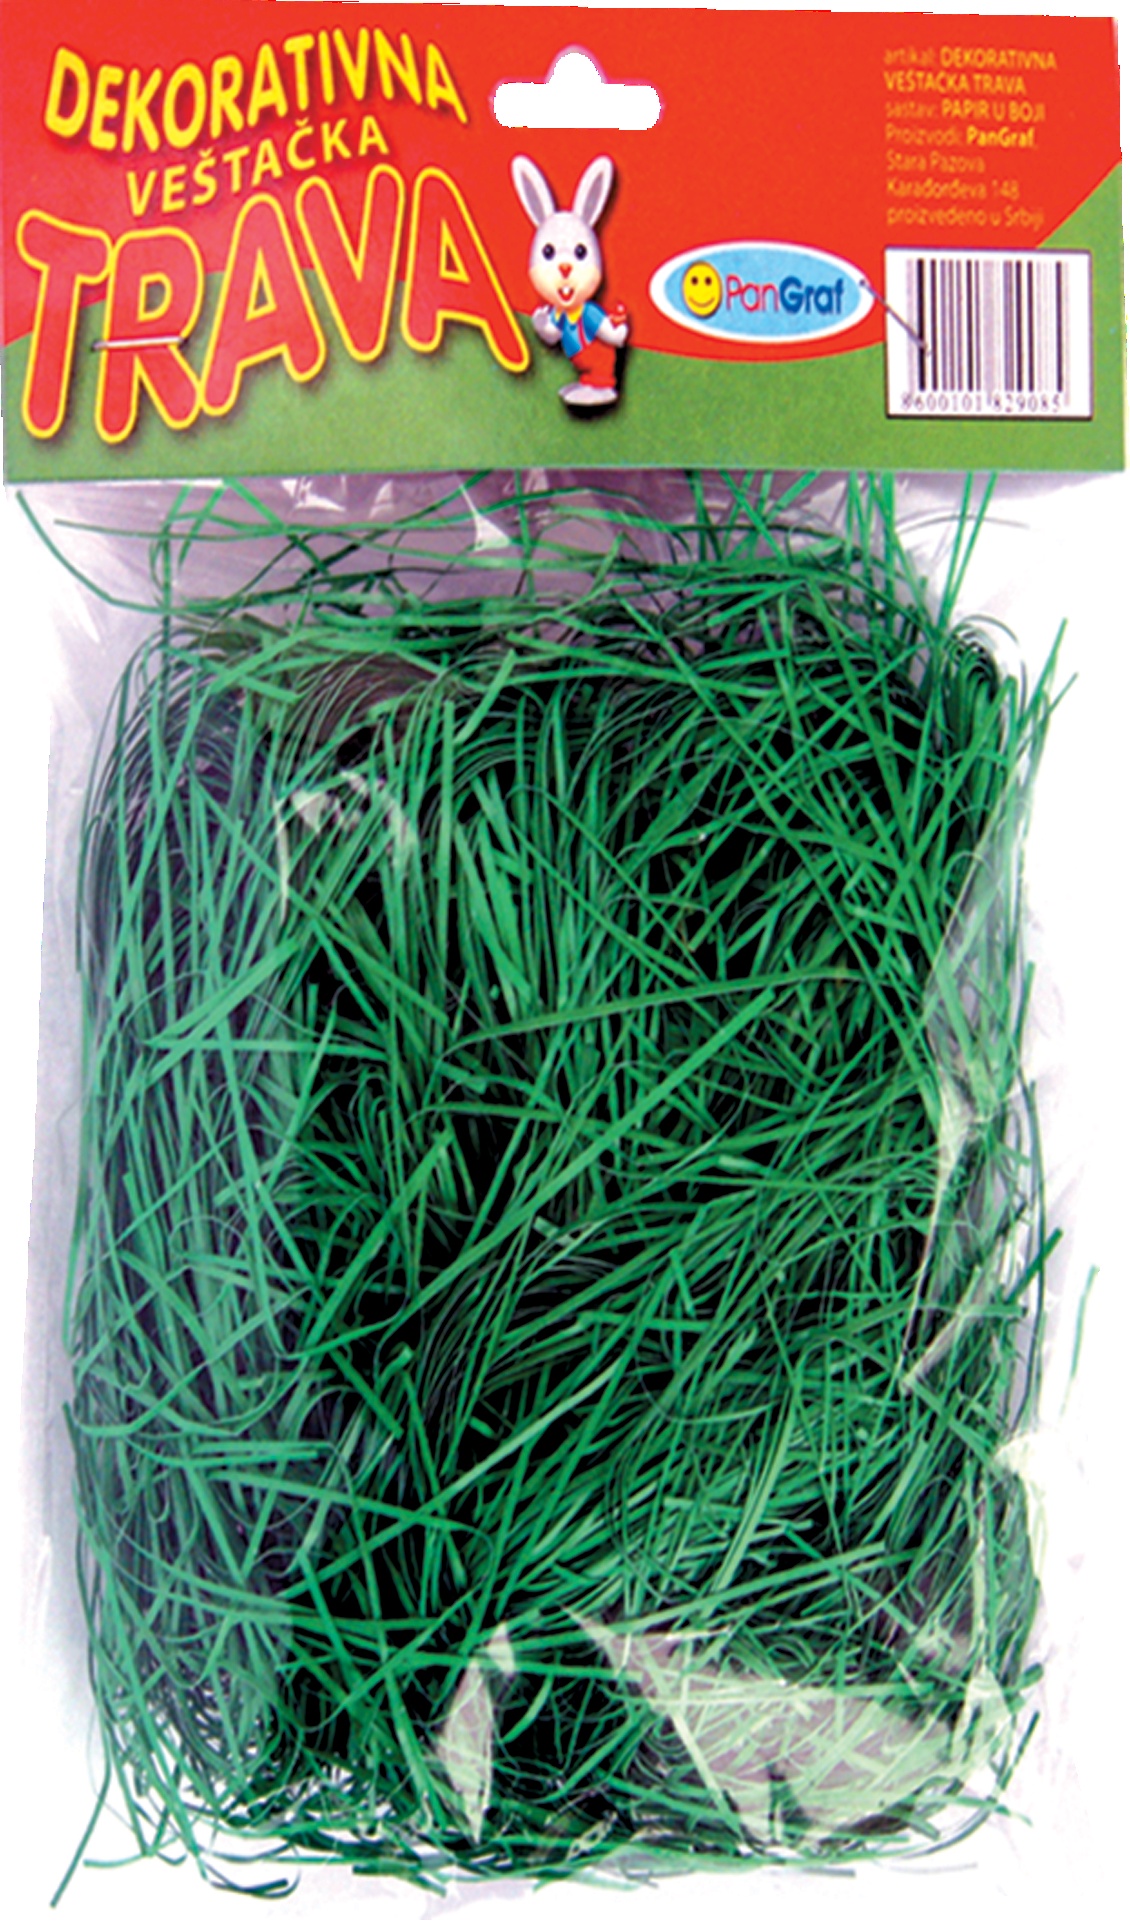 Slika za Dekorativna trava u boji